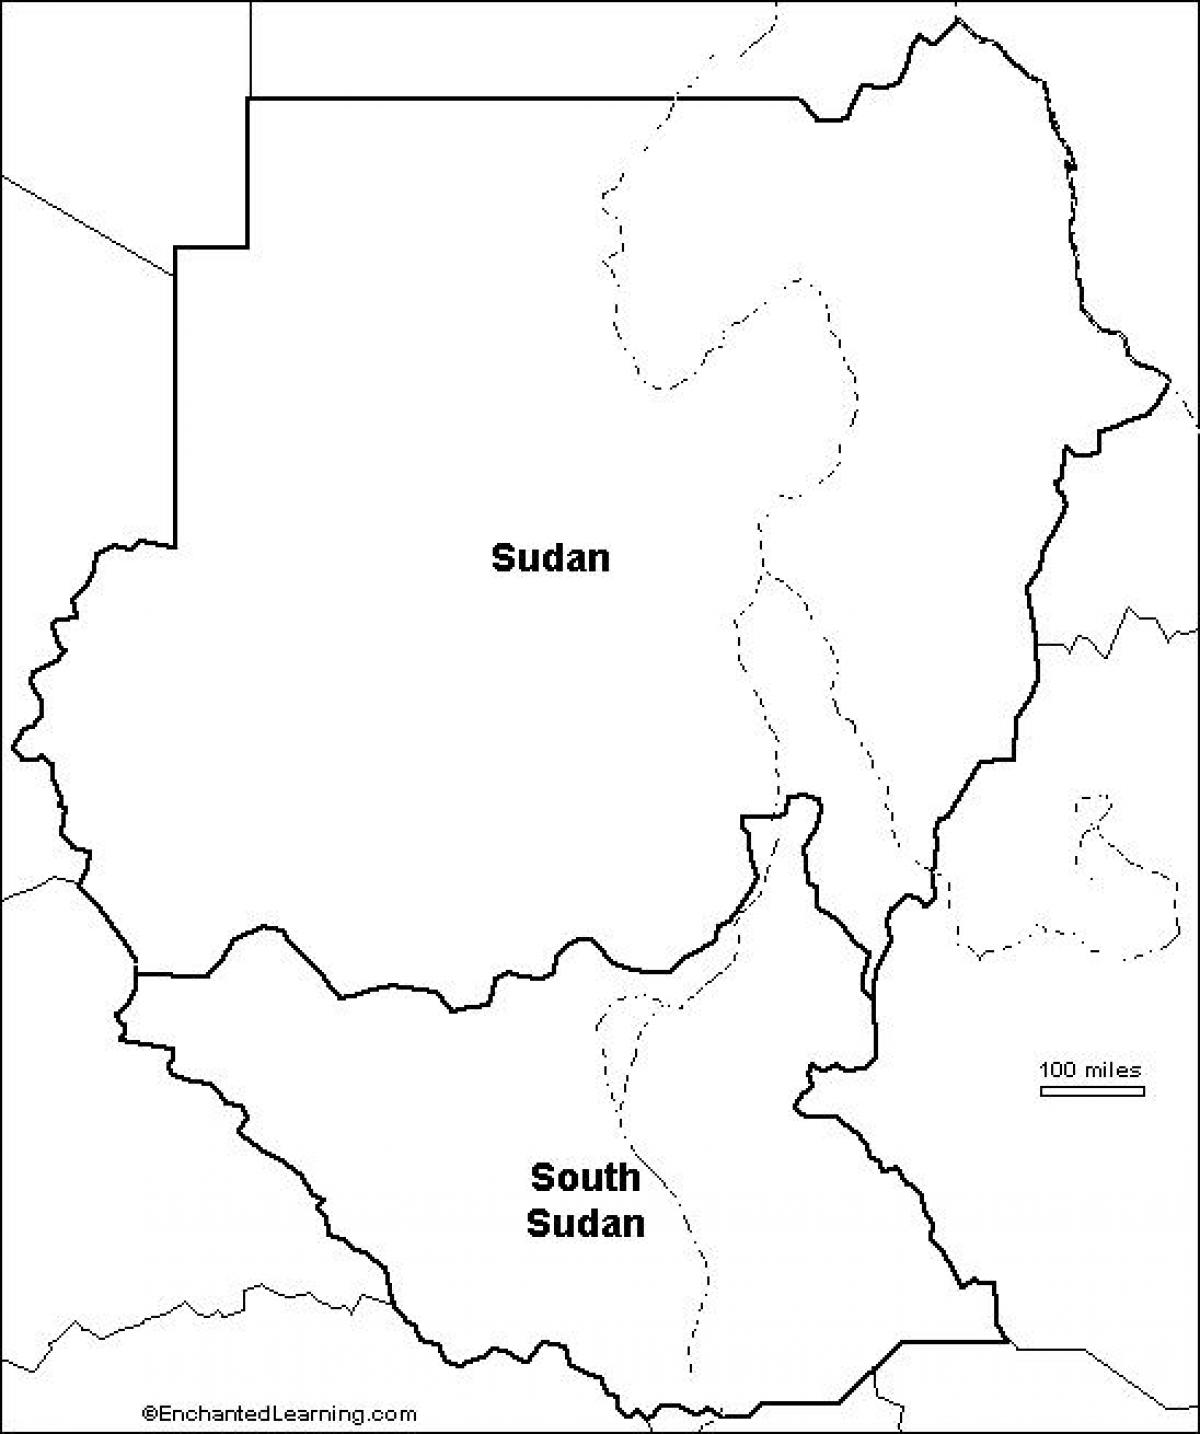 Kaart van Soedan leeg